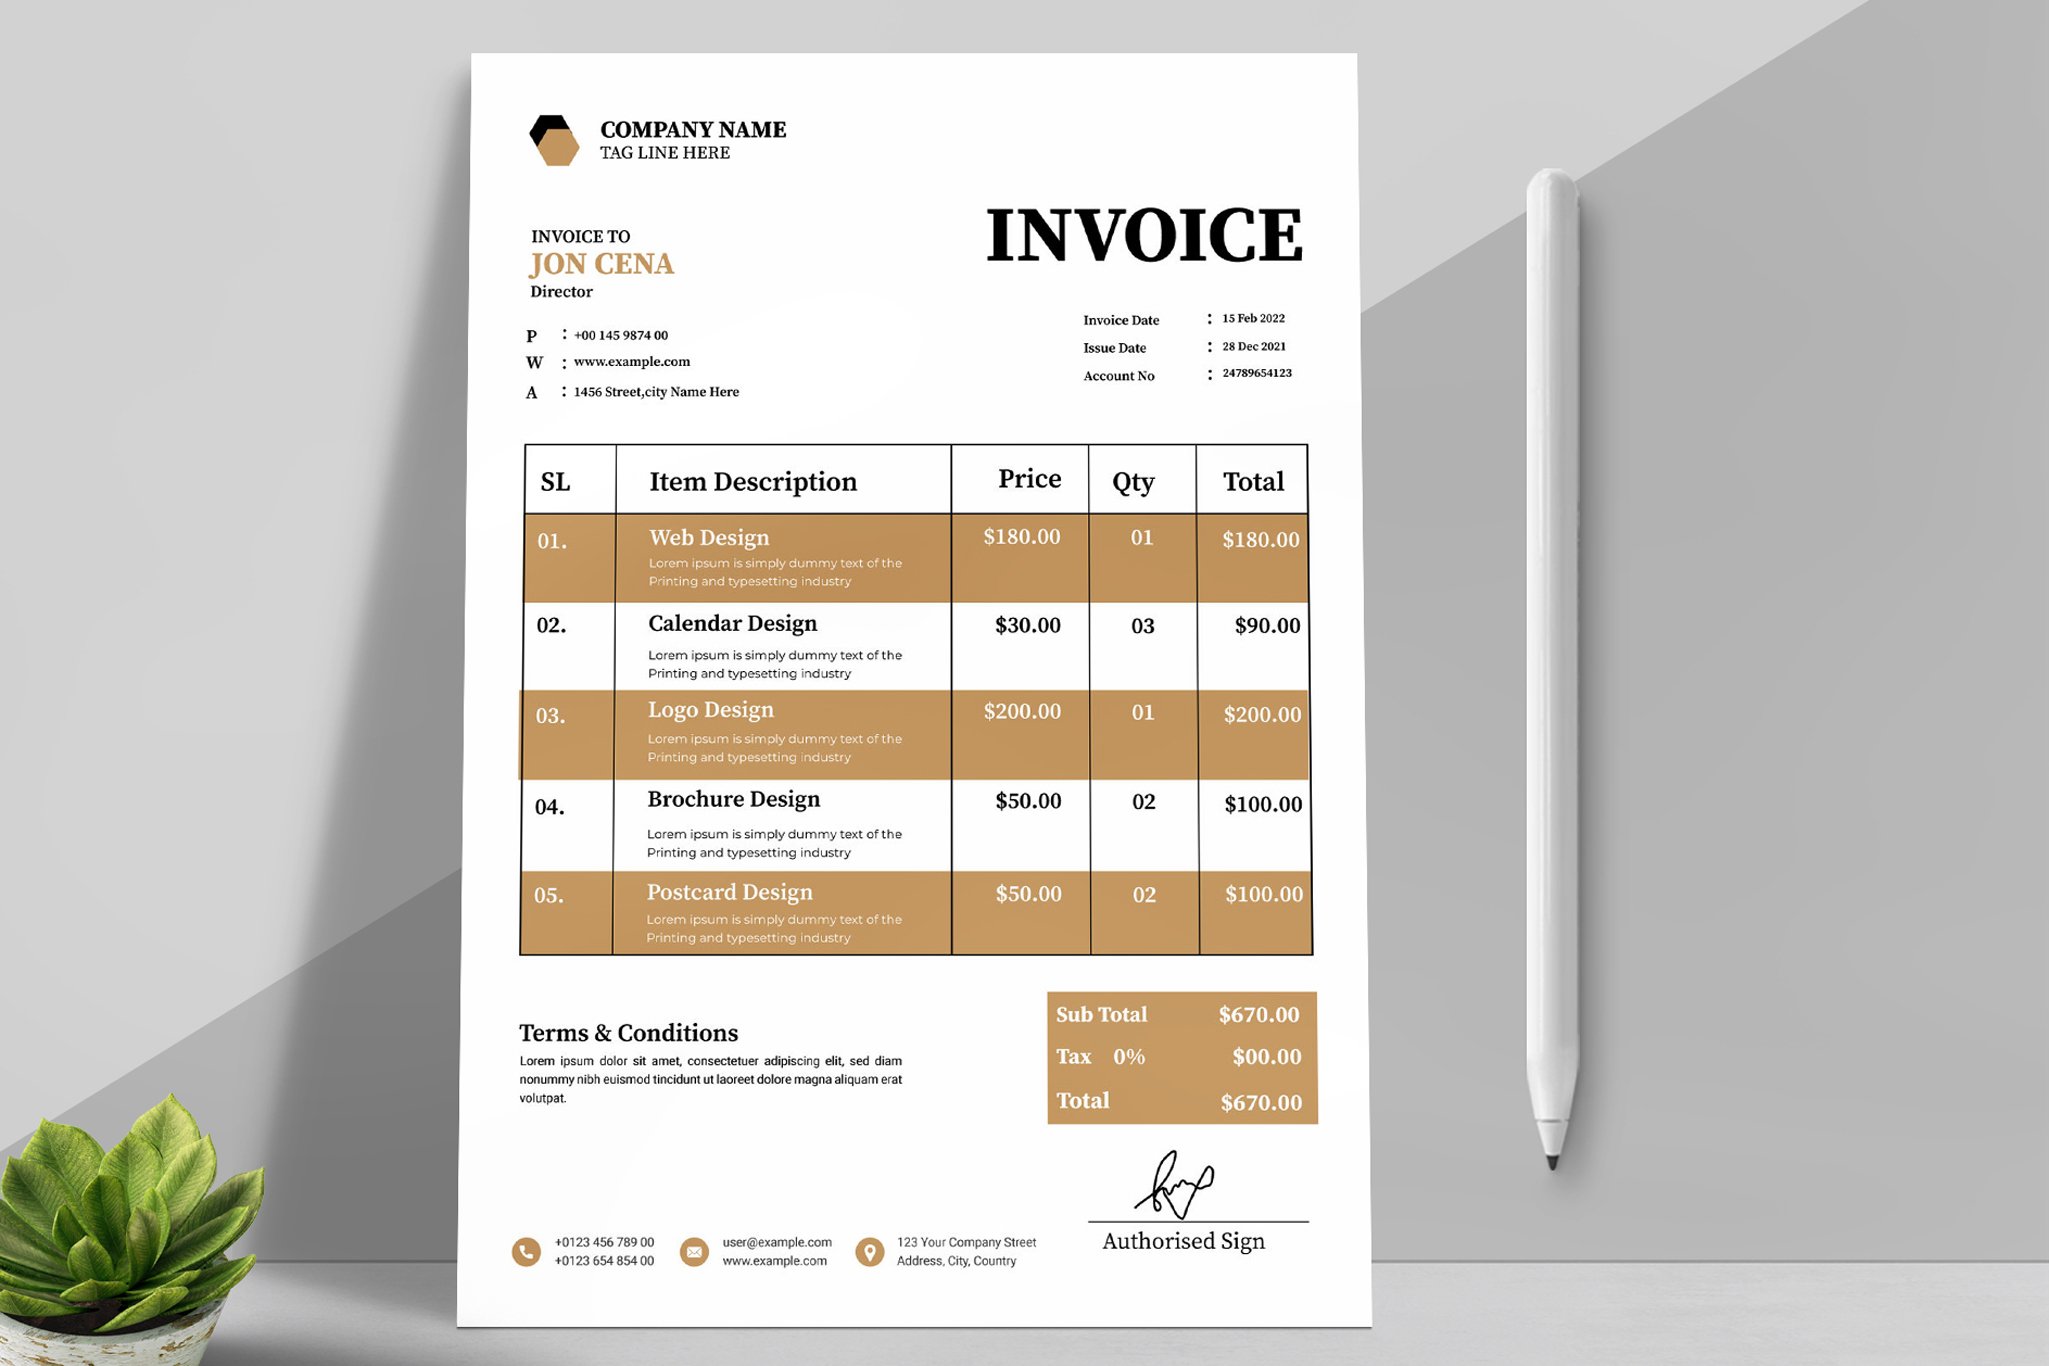 Invoice Design 2023 cover image.